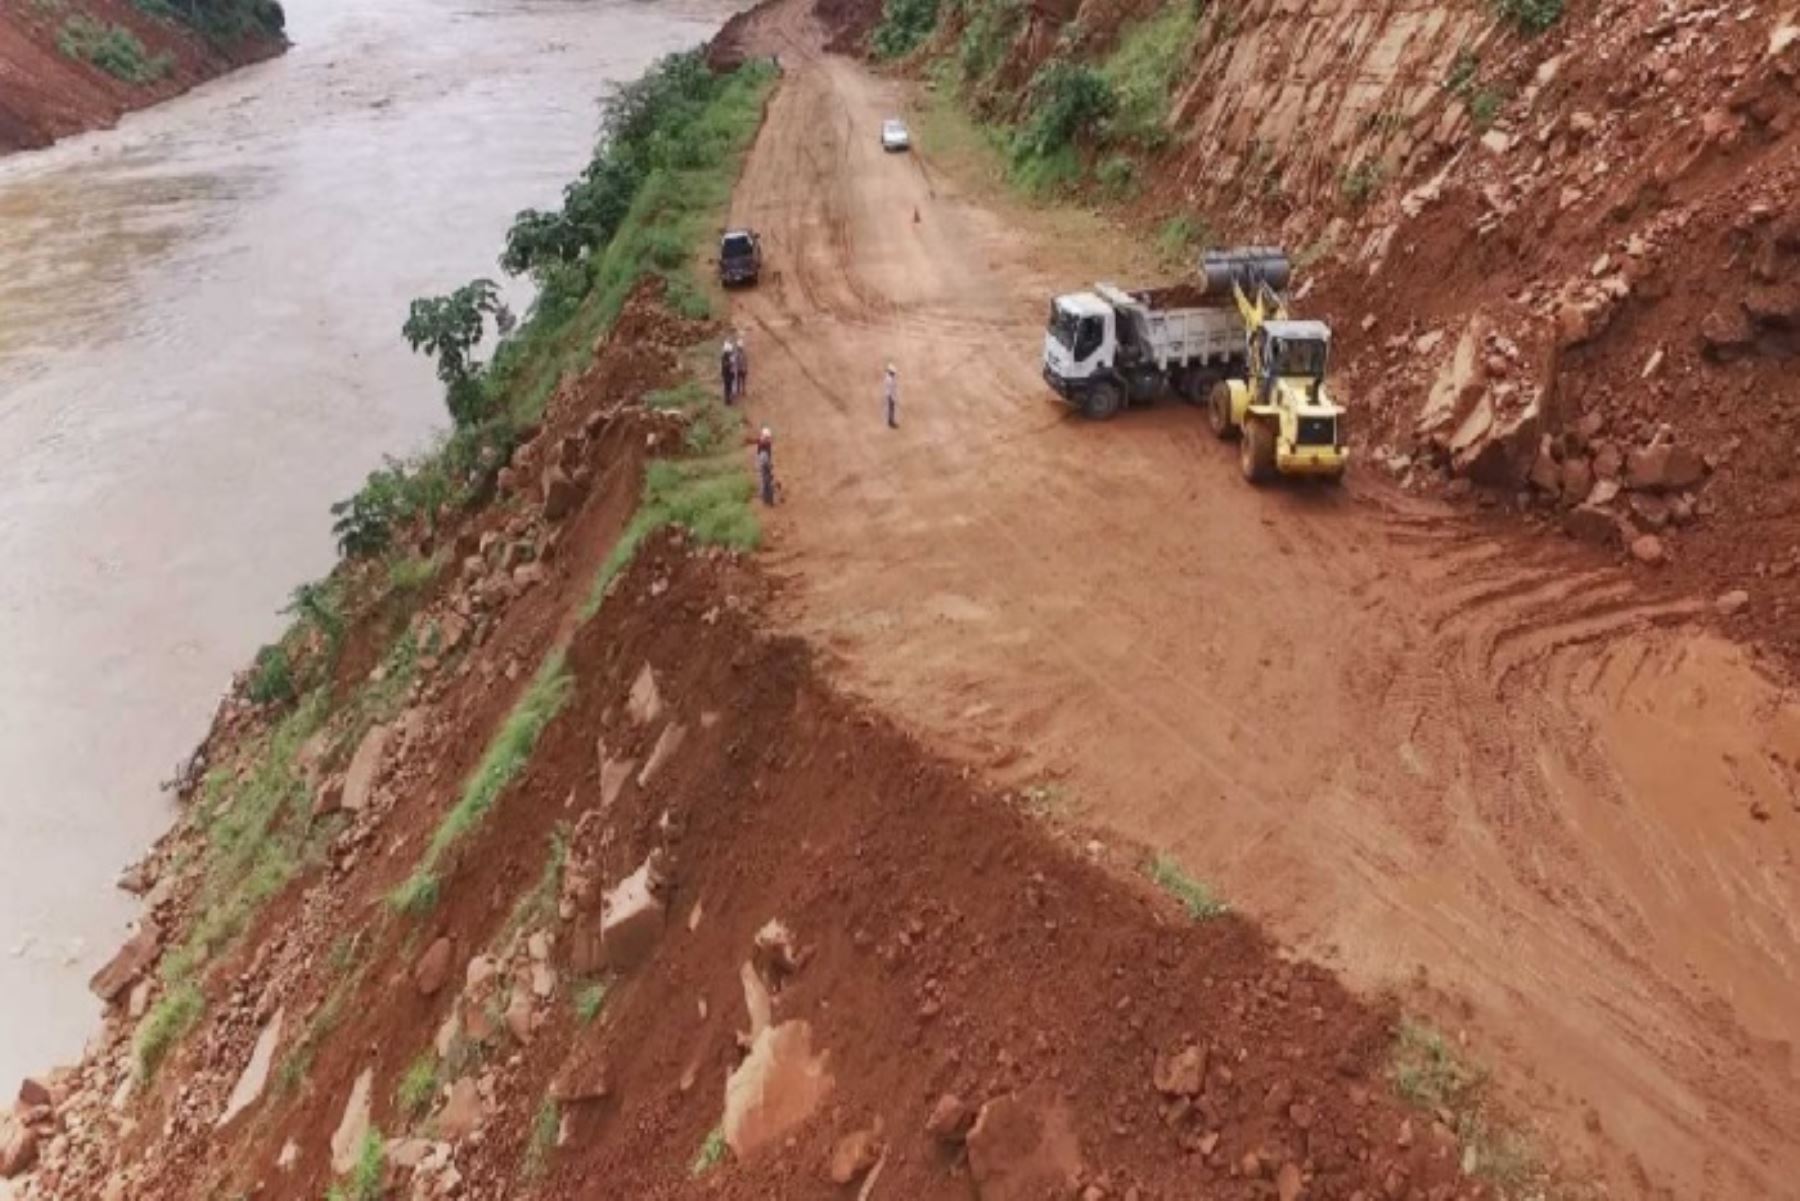 Con el uso de maquinaria pesada de la Dirección Regional de Transportes y Comunicaciones de San Martín, se rehabilitó el sector “Mativuelo” en la carretera Shapaja Chazuta, la misma que se interrumpió por el deslizamiento de rocas y lodo causado por las lluvias que caen en la zona.